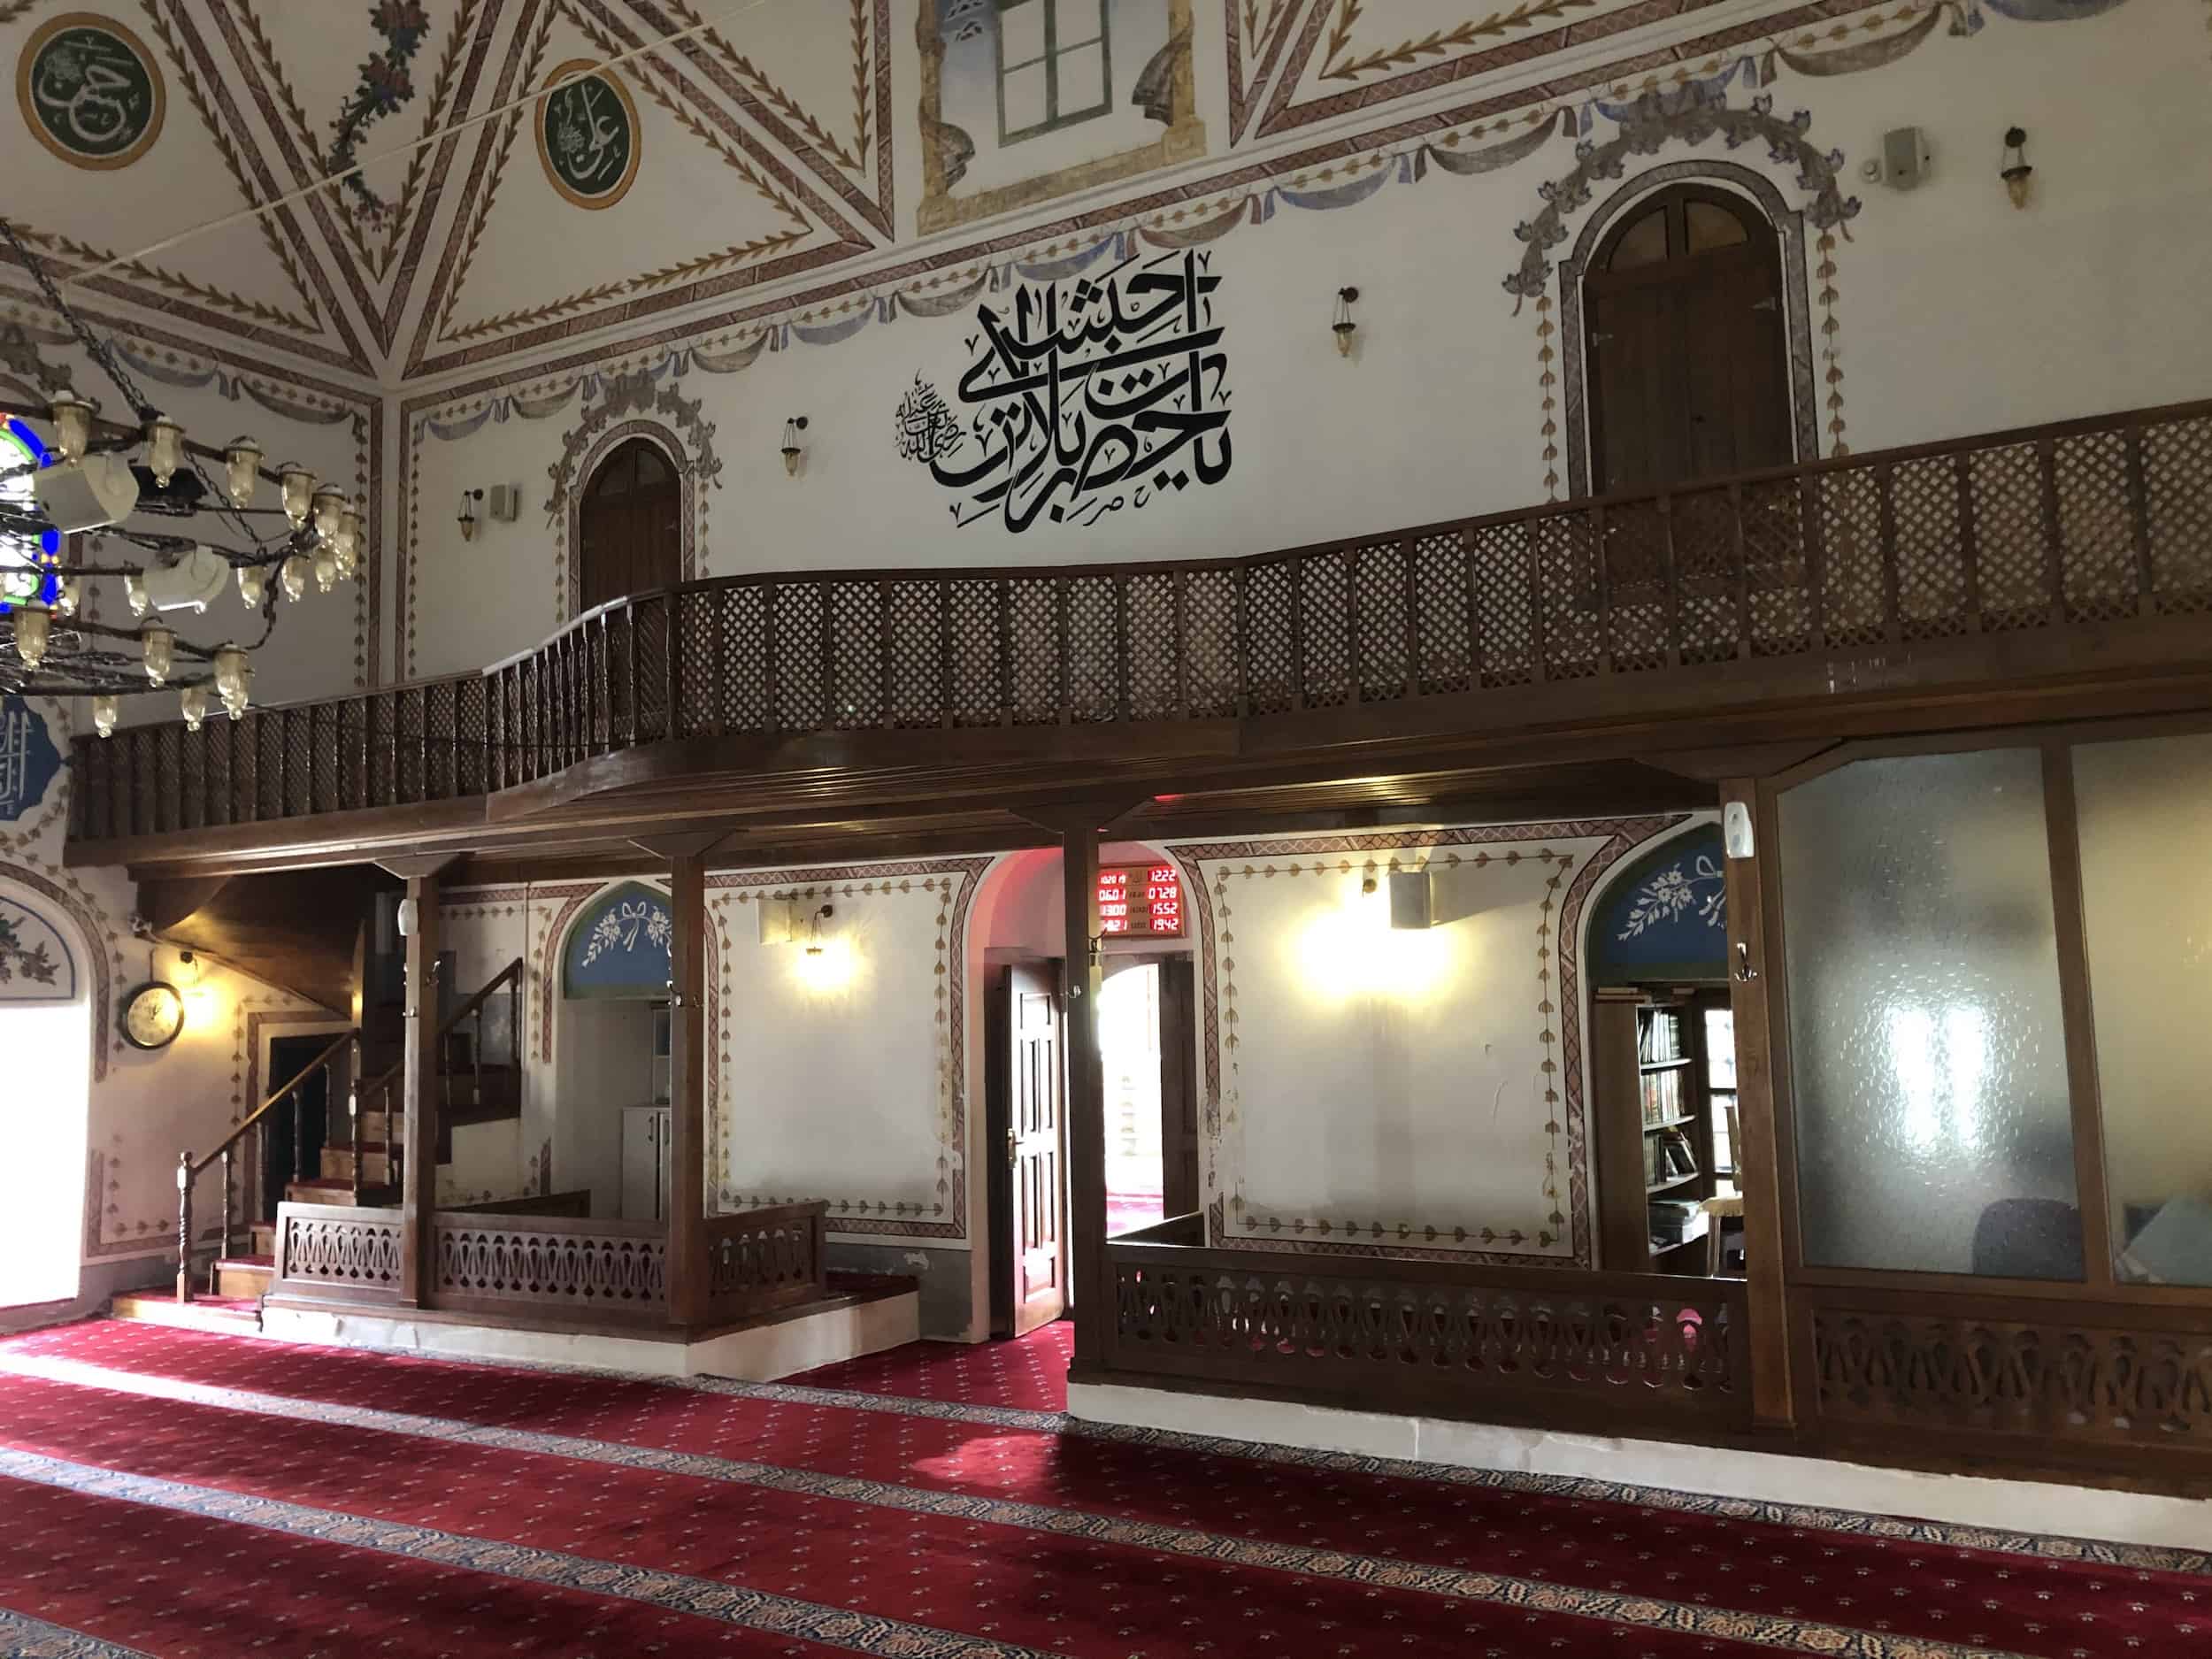 Balcony at the Hızırbey Mosque in Kırklareli, Turkey